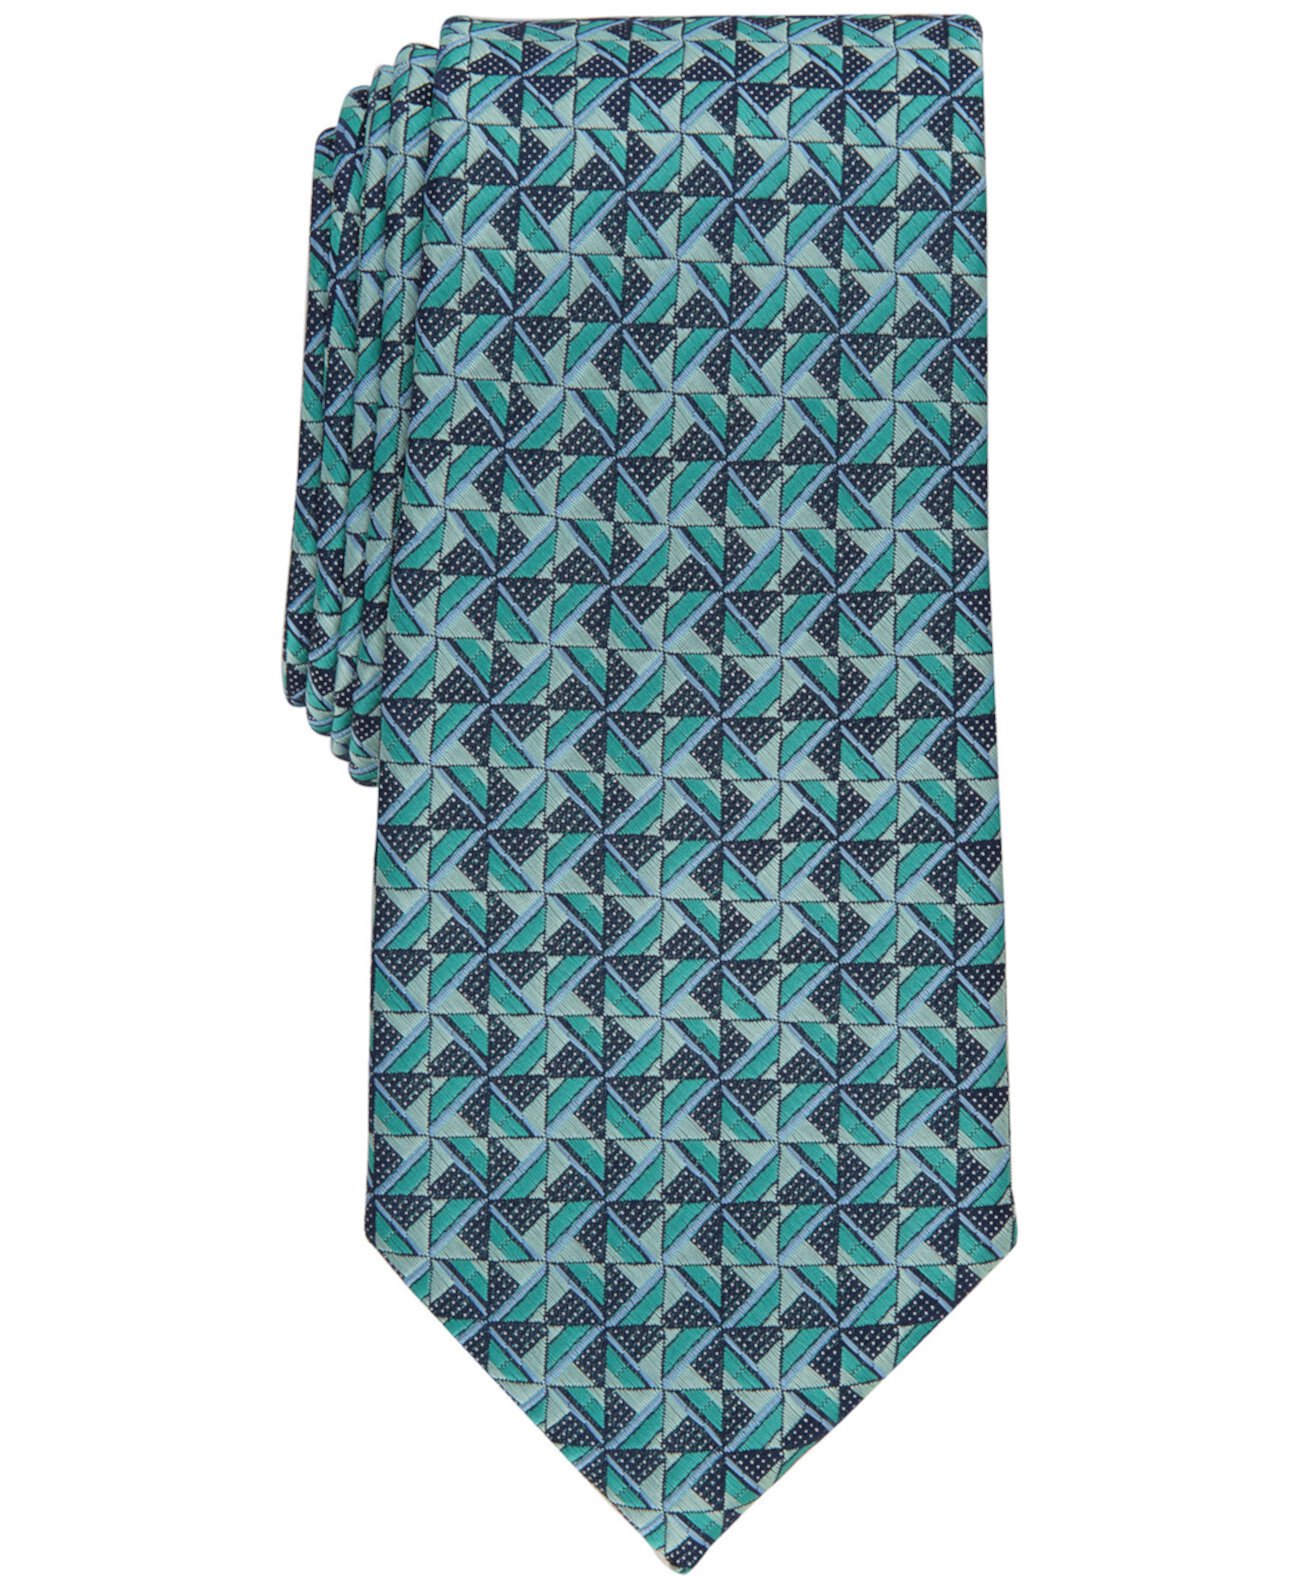 Мужской галстук Levant Classic с геометрическим рисунком Perry Ellis